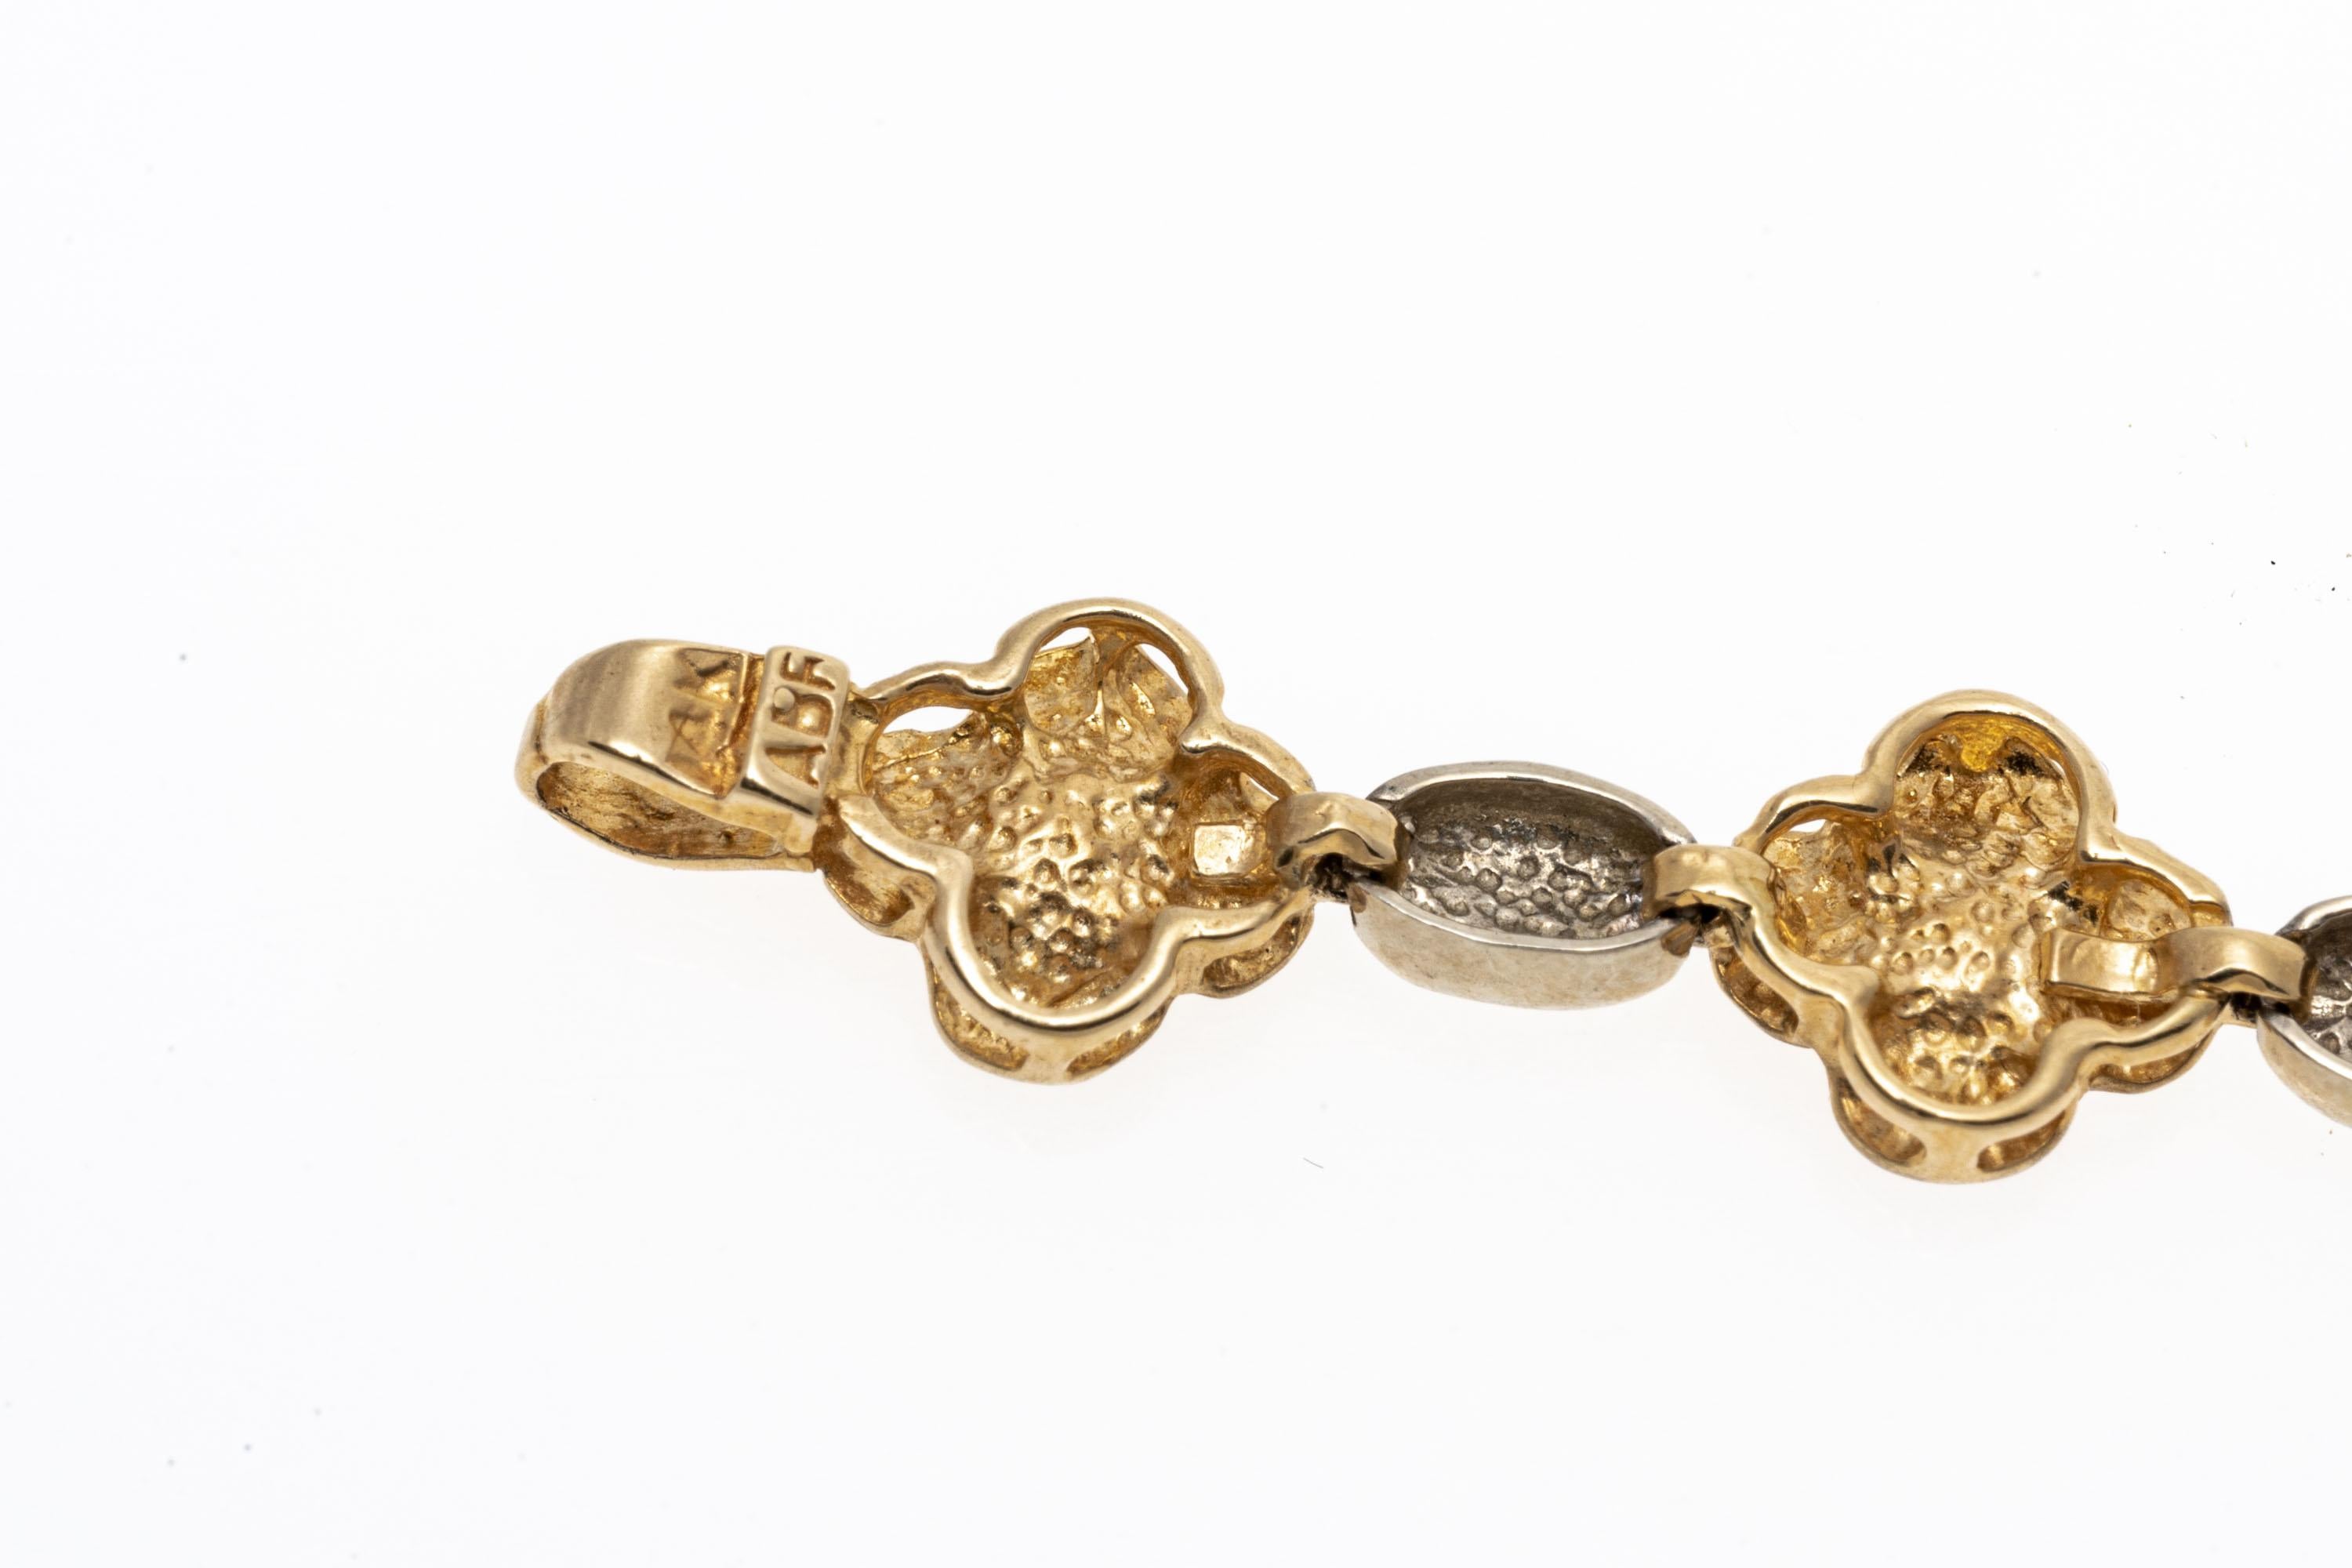 Un bracelet de ligne italien fabriqué en or 14K. Ce charmant bracelet linéaire présente un motif alternant des fleurs en or jaune avec une finition mate et des maillons de connexion en or blanc poli. Fermeture de type pince de homard.
Marques : 14K